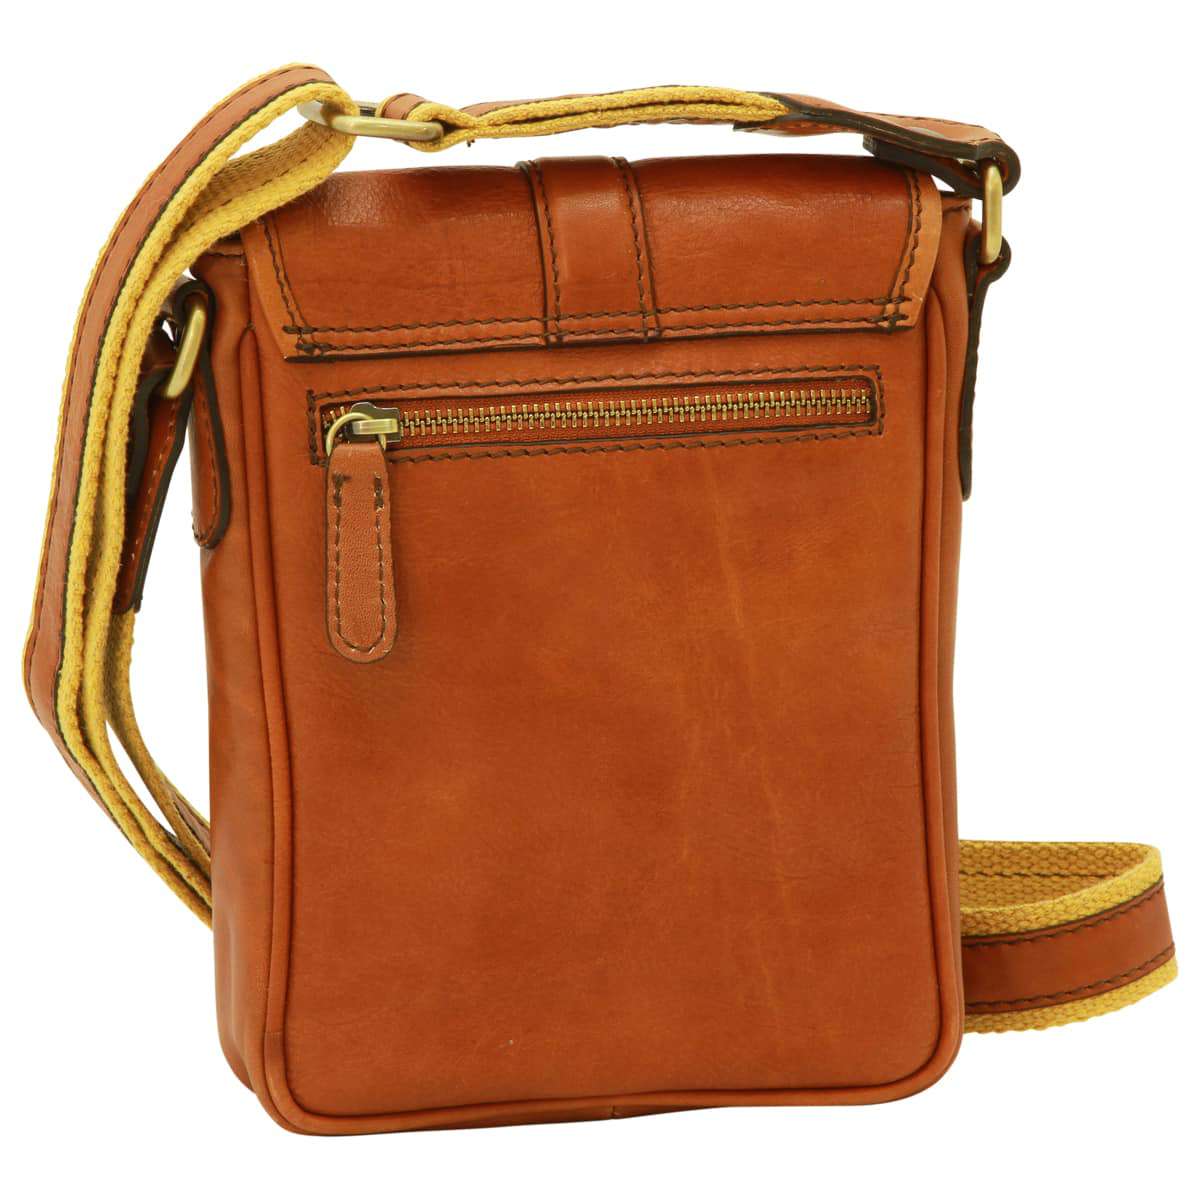 Soft Calfskin Leather Satchel Bag - Gold | 031191CO | EURO | Old Angler Firenze